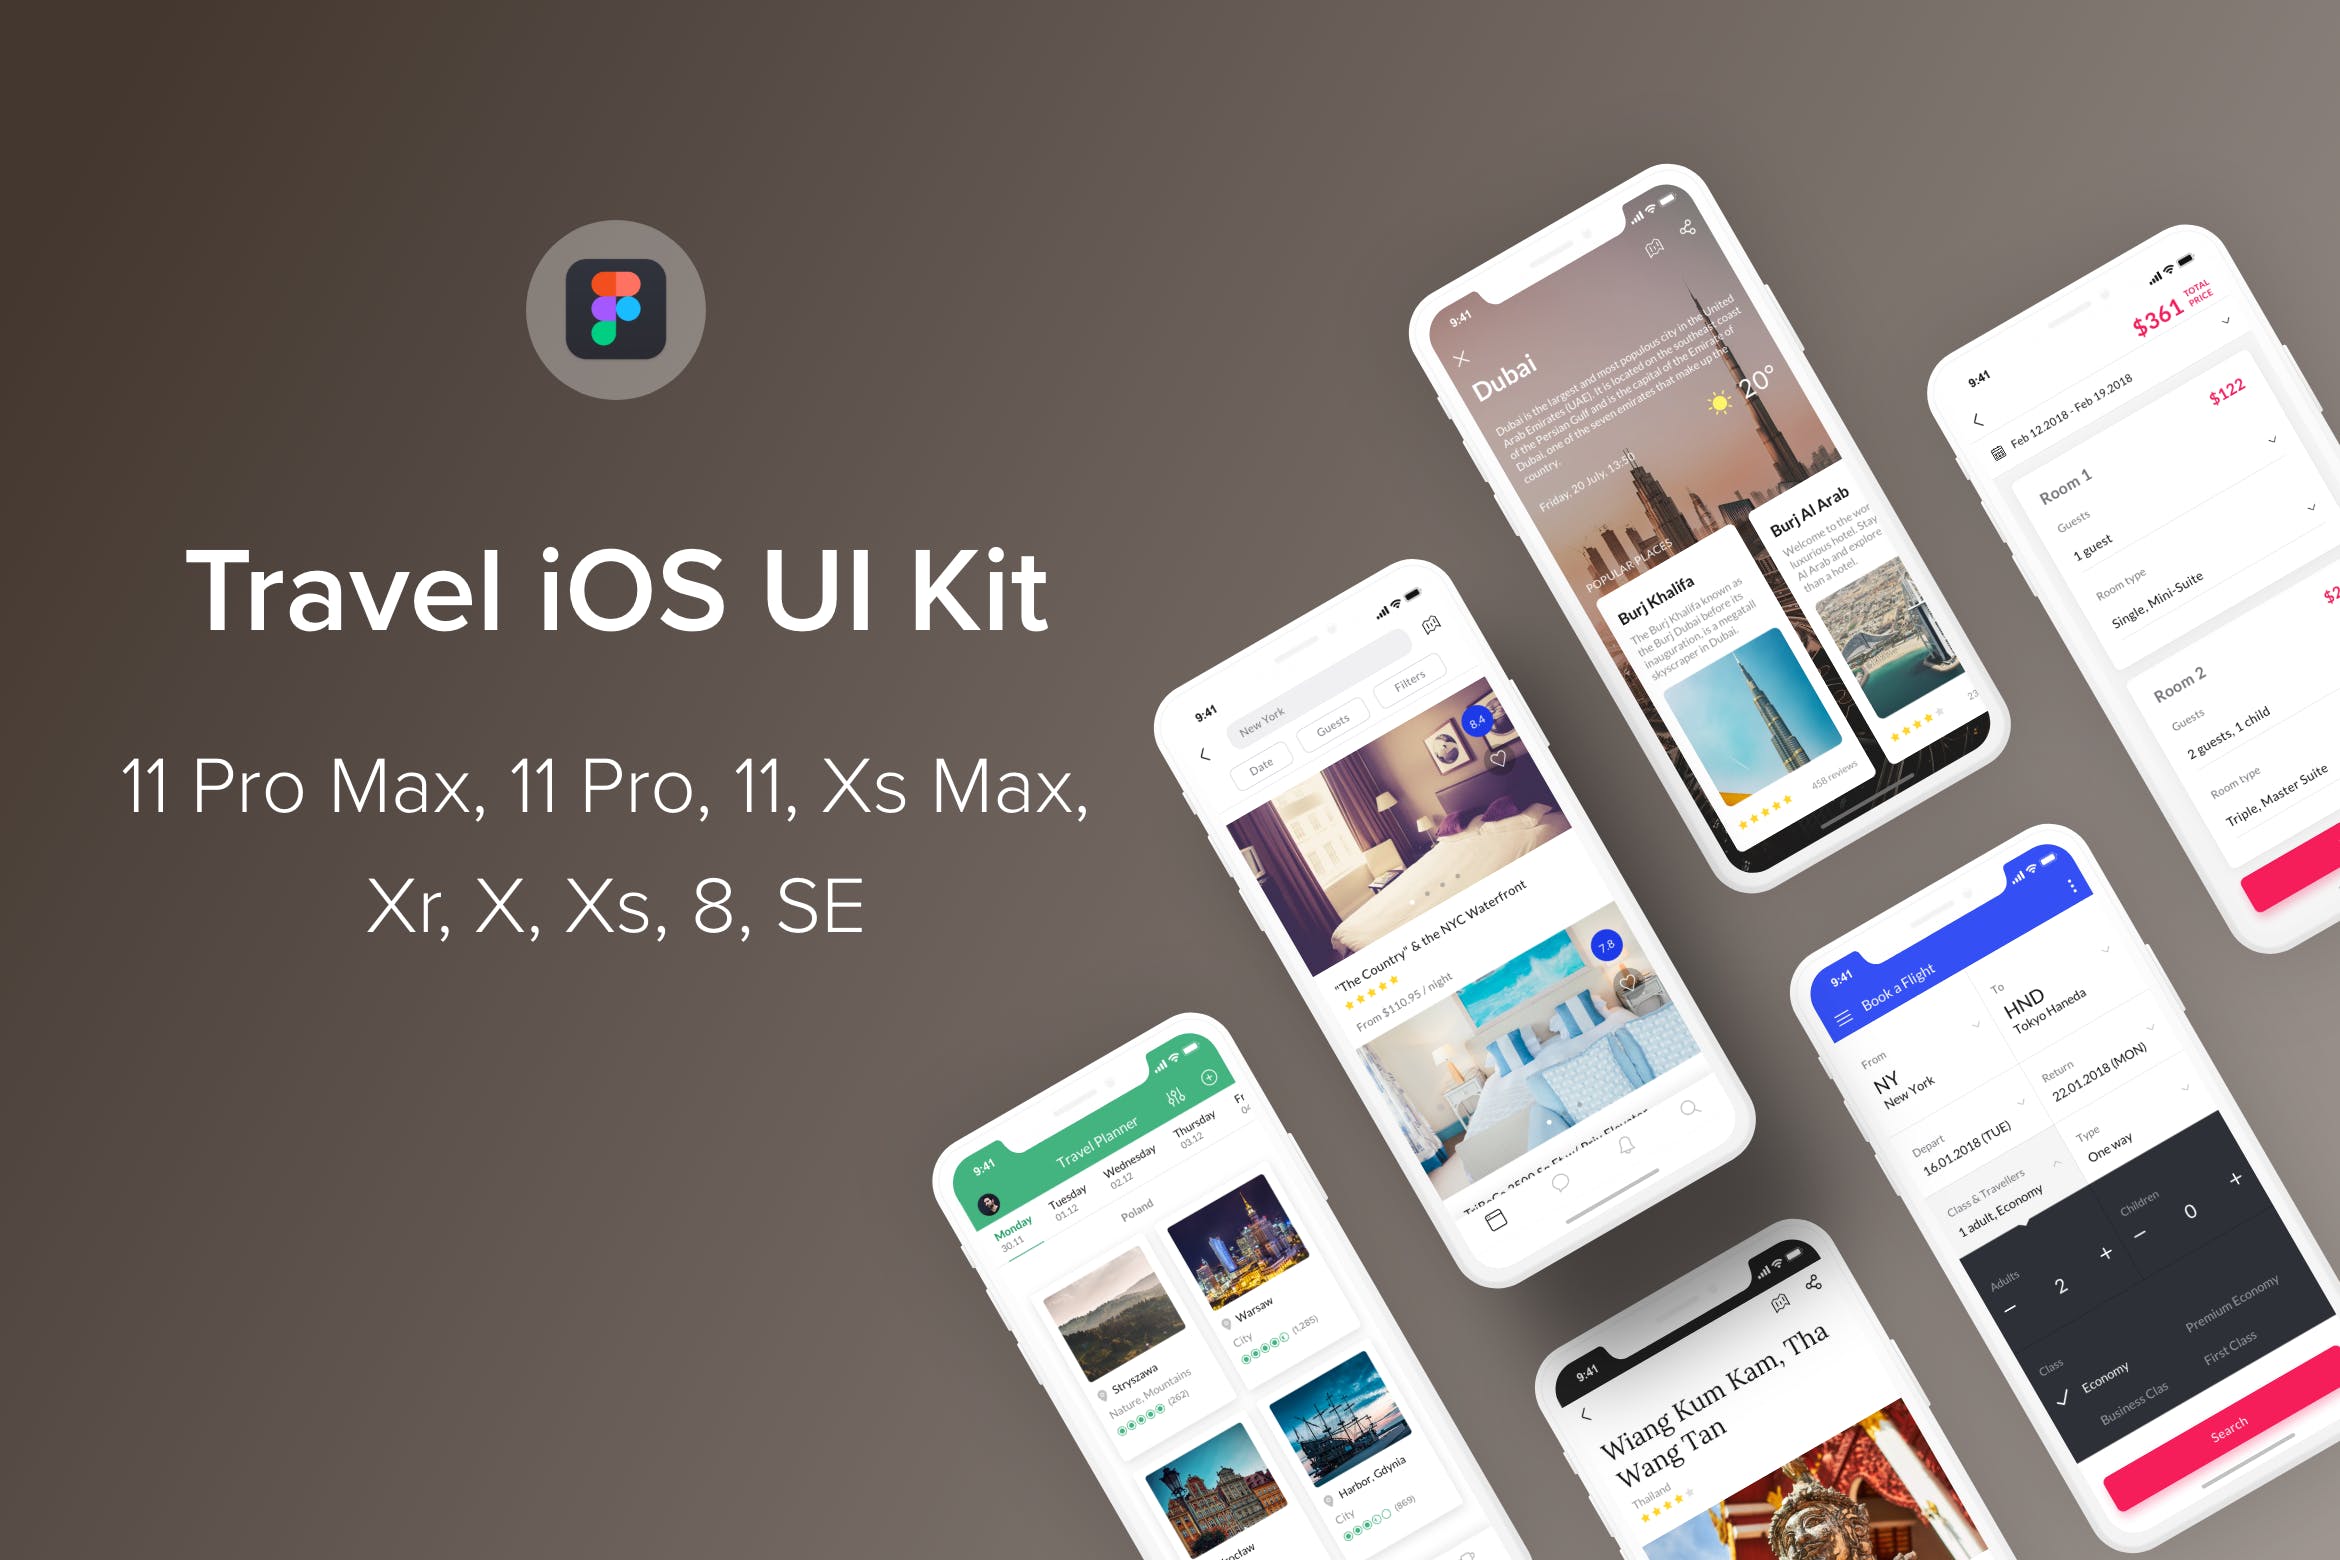 旅游主题iOS应用UI设计非凡图库精选套件Figma模板 Travel iOS UI Kit (Figma)插图